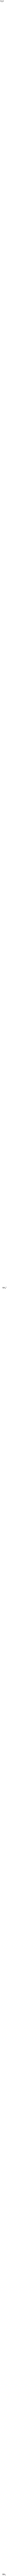 Ammonium boron oxide ((NH4)2B4O7)